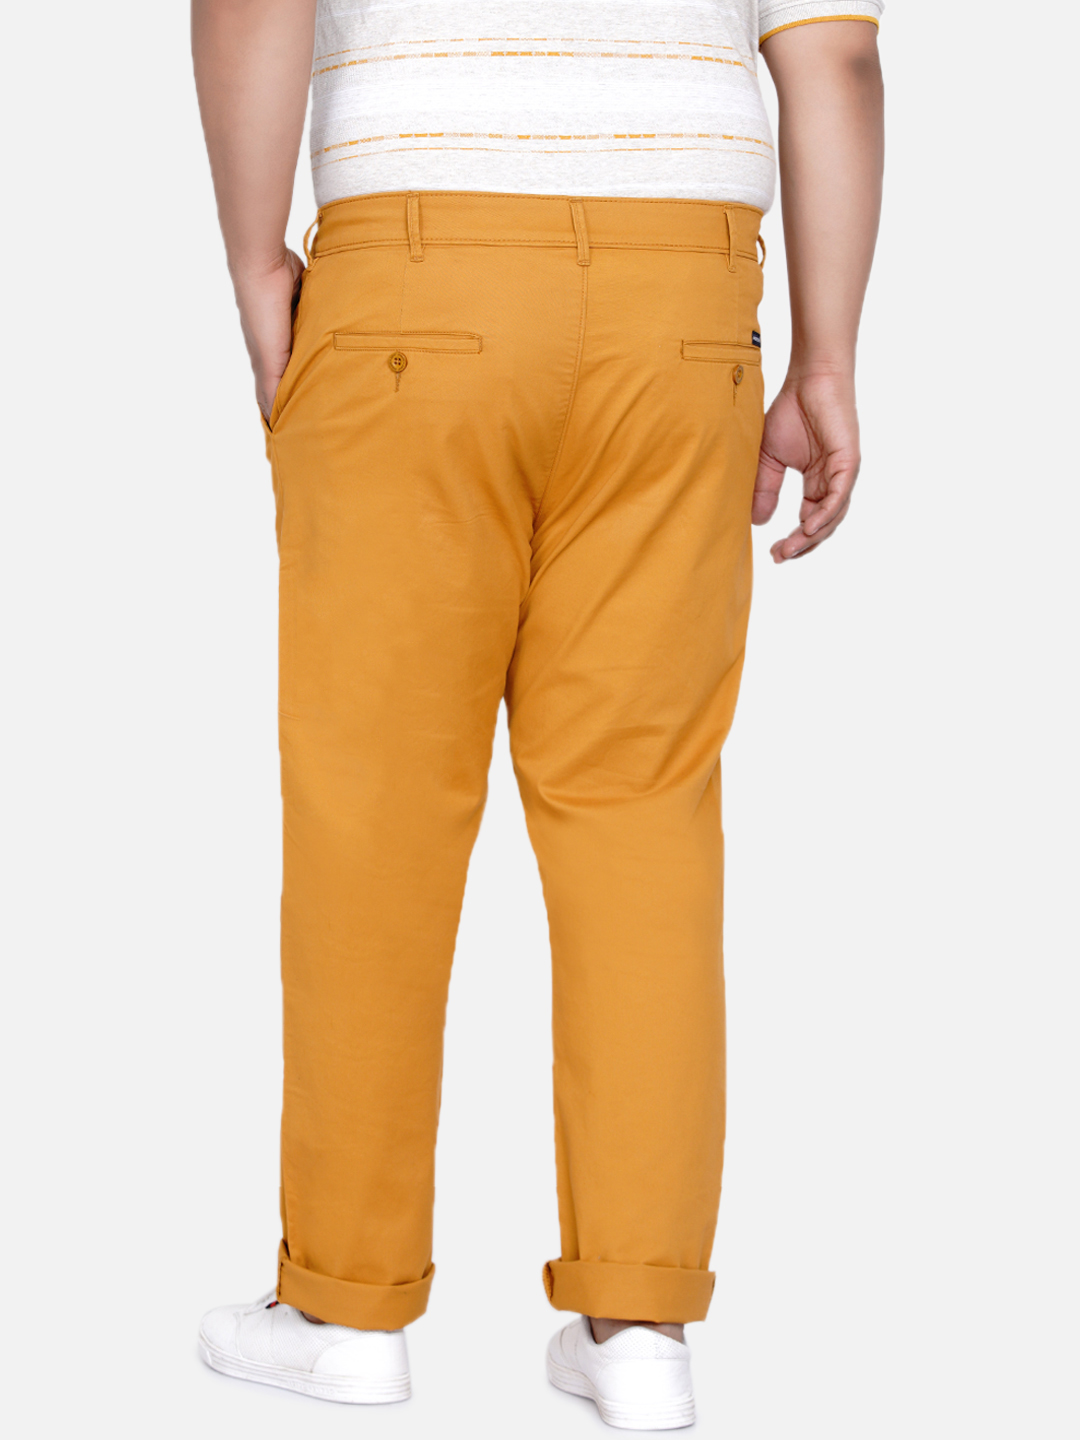 bottomwear/trousers/JPTR2195P/jptr2195p-4.jpg